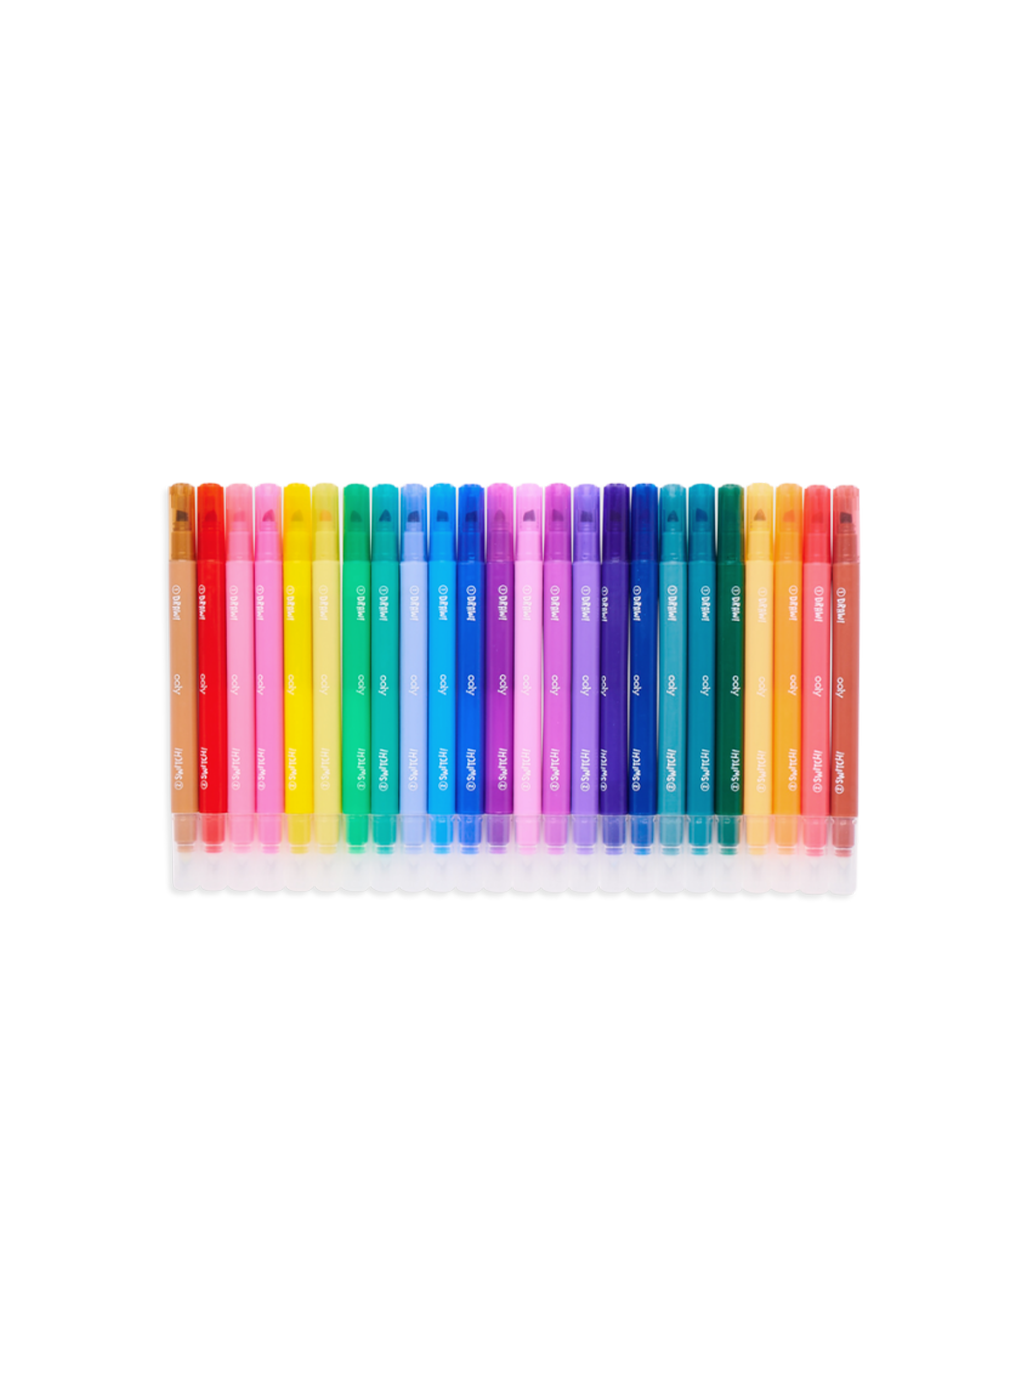 Farbwechselnde Marker Switch-Eroo 24 Farben